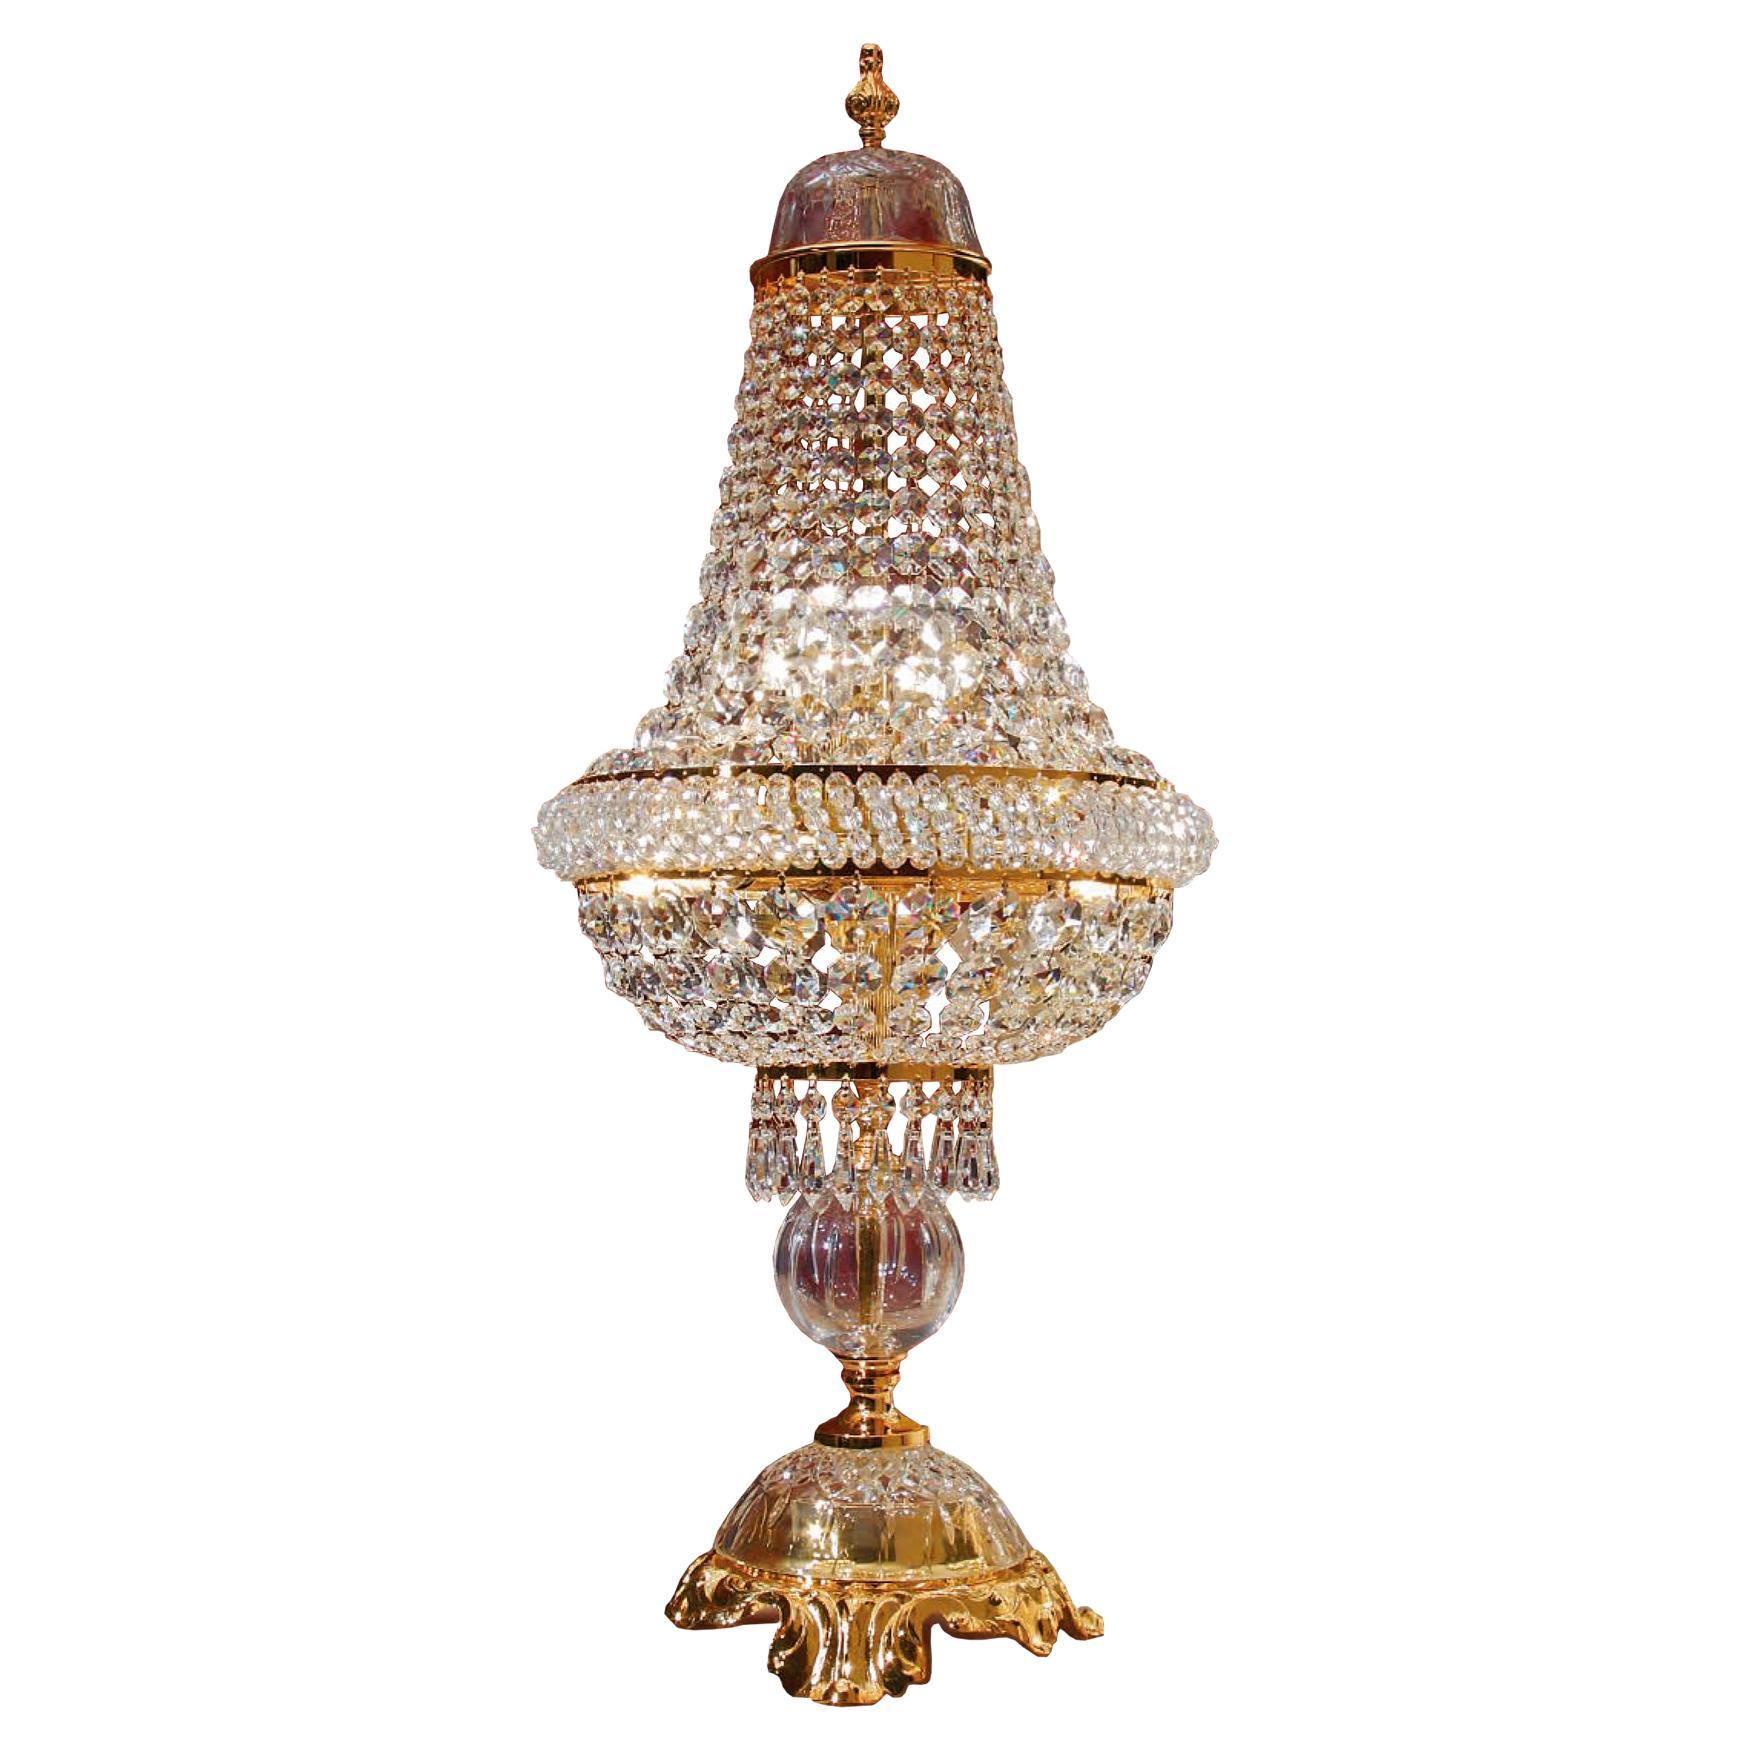 Tischlampe mit 5 Leuchten in 24kt Gold, verziert mit klaren Scholer-Kristallen